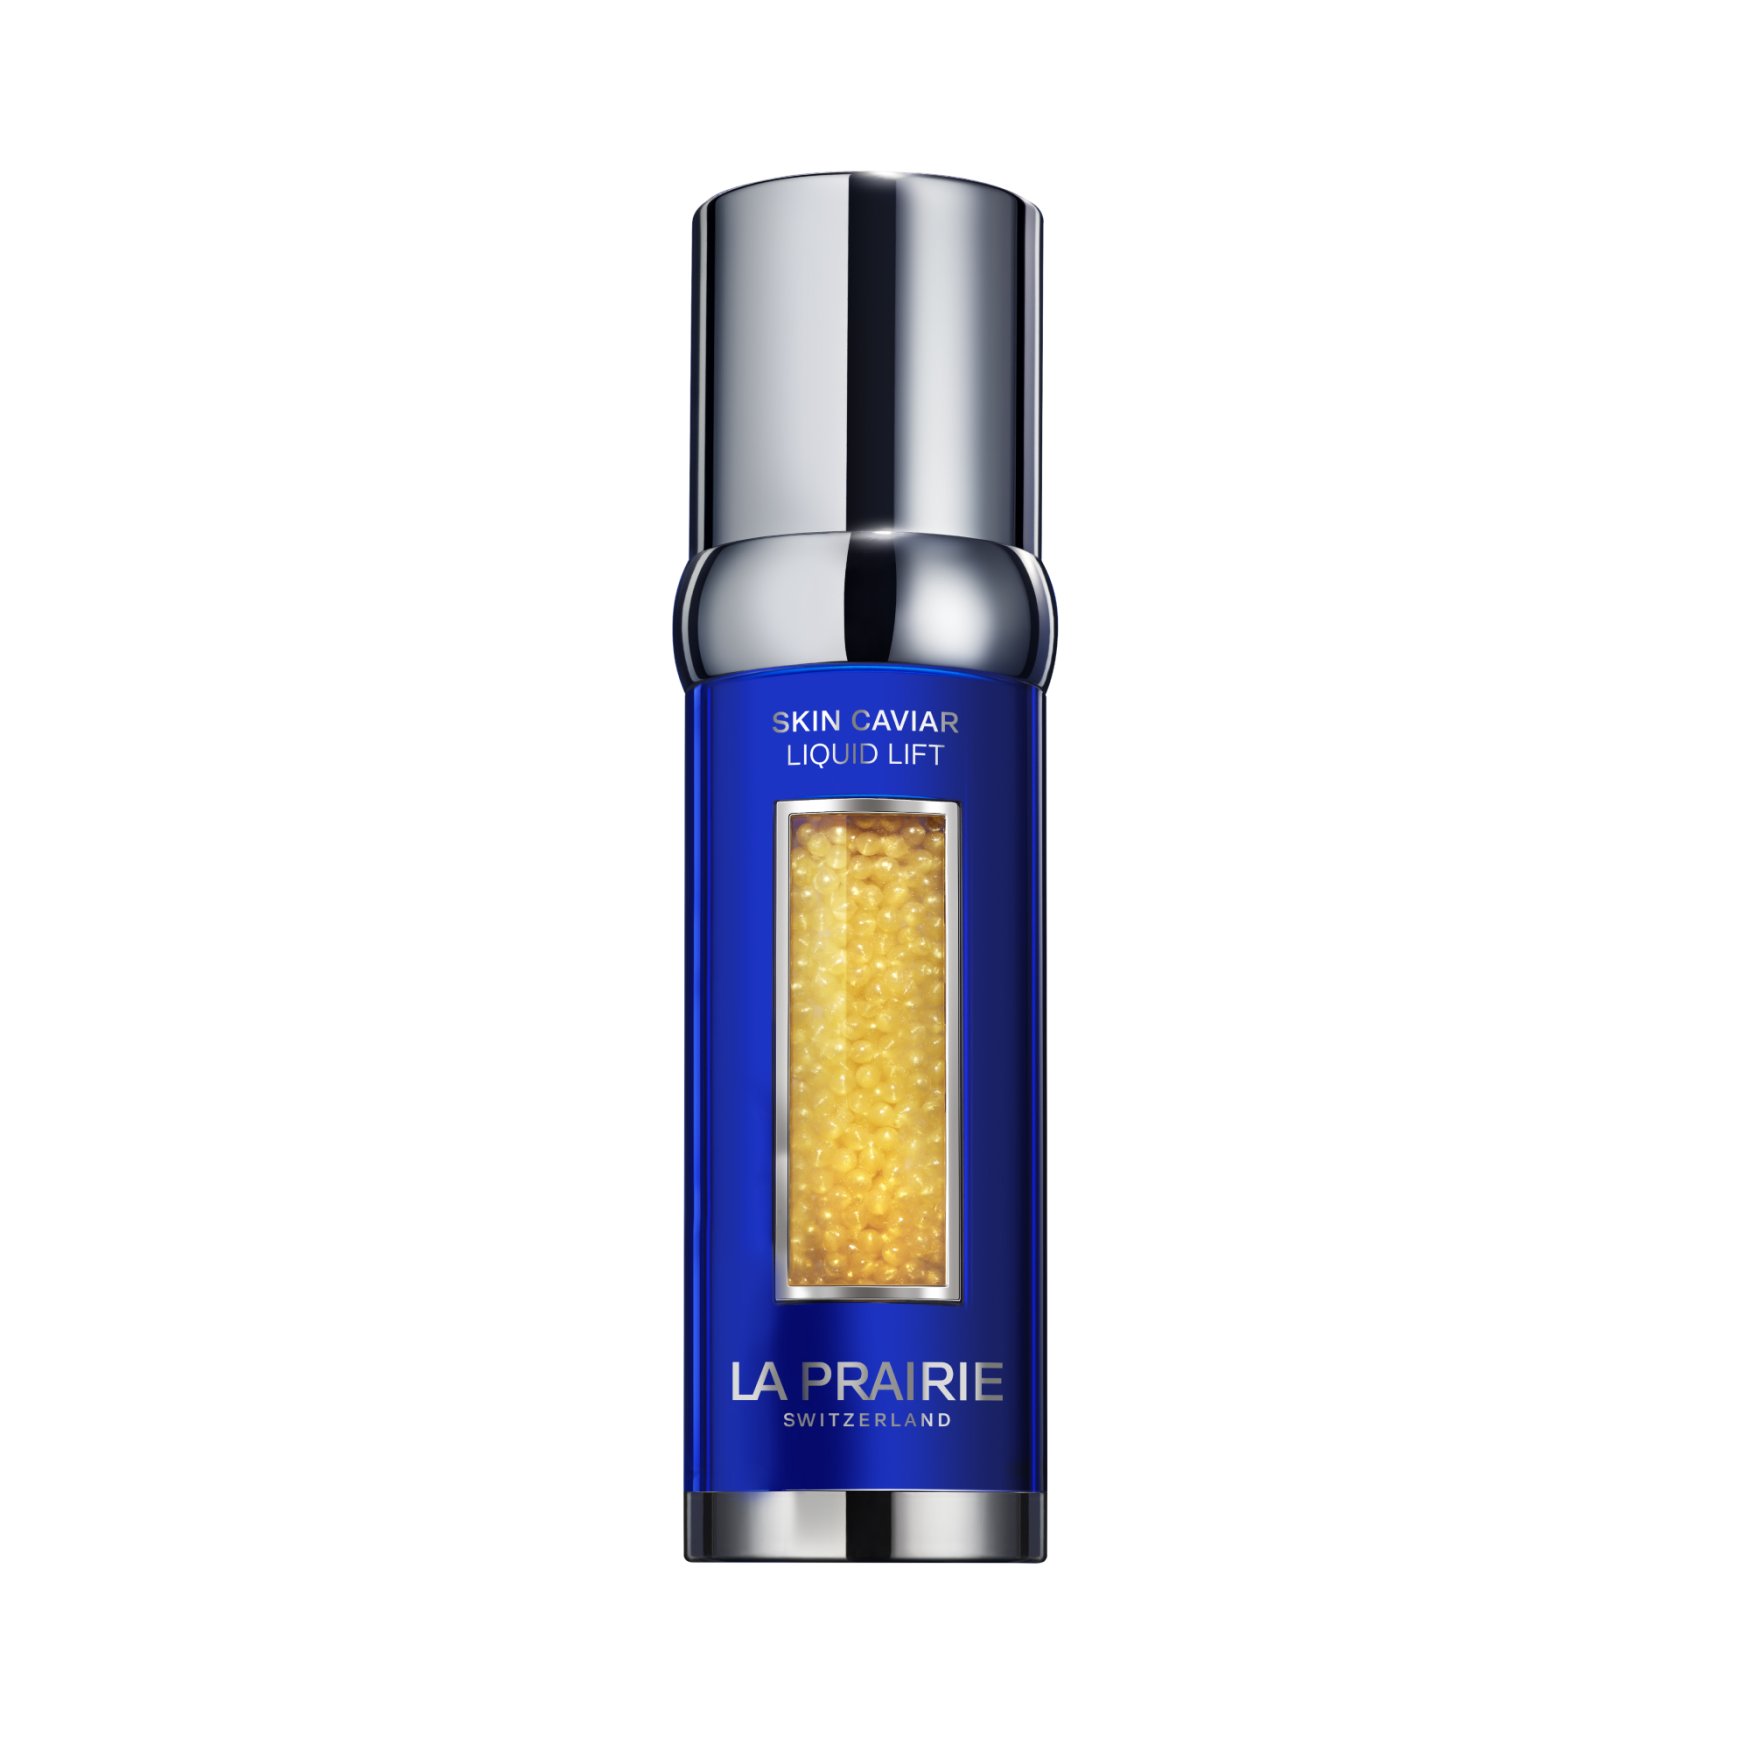 LA PRAIRIE Skin Caviar Liquid Lift | Space NK